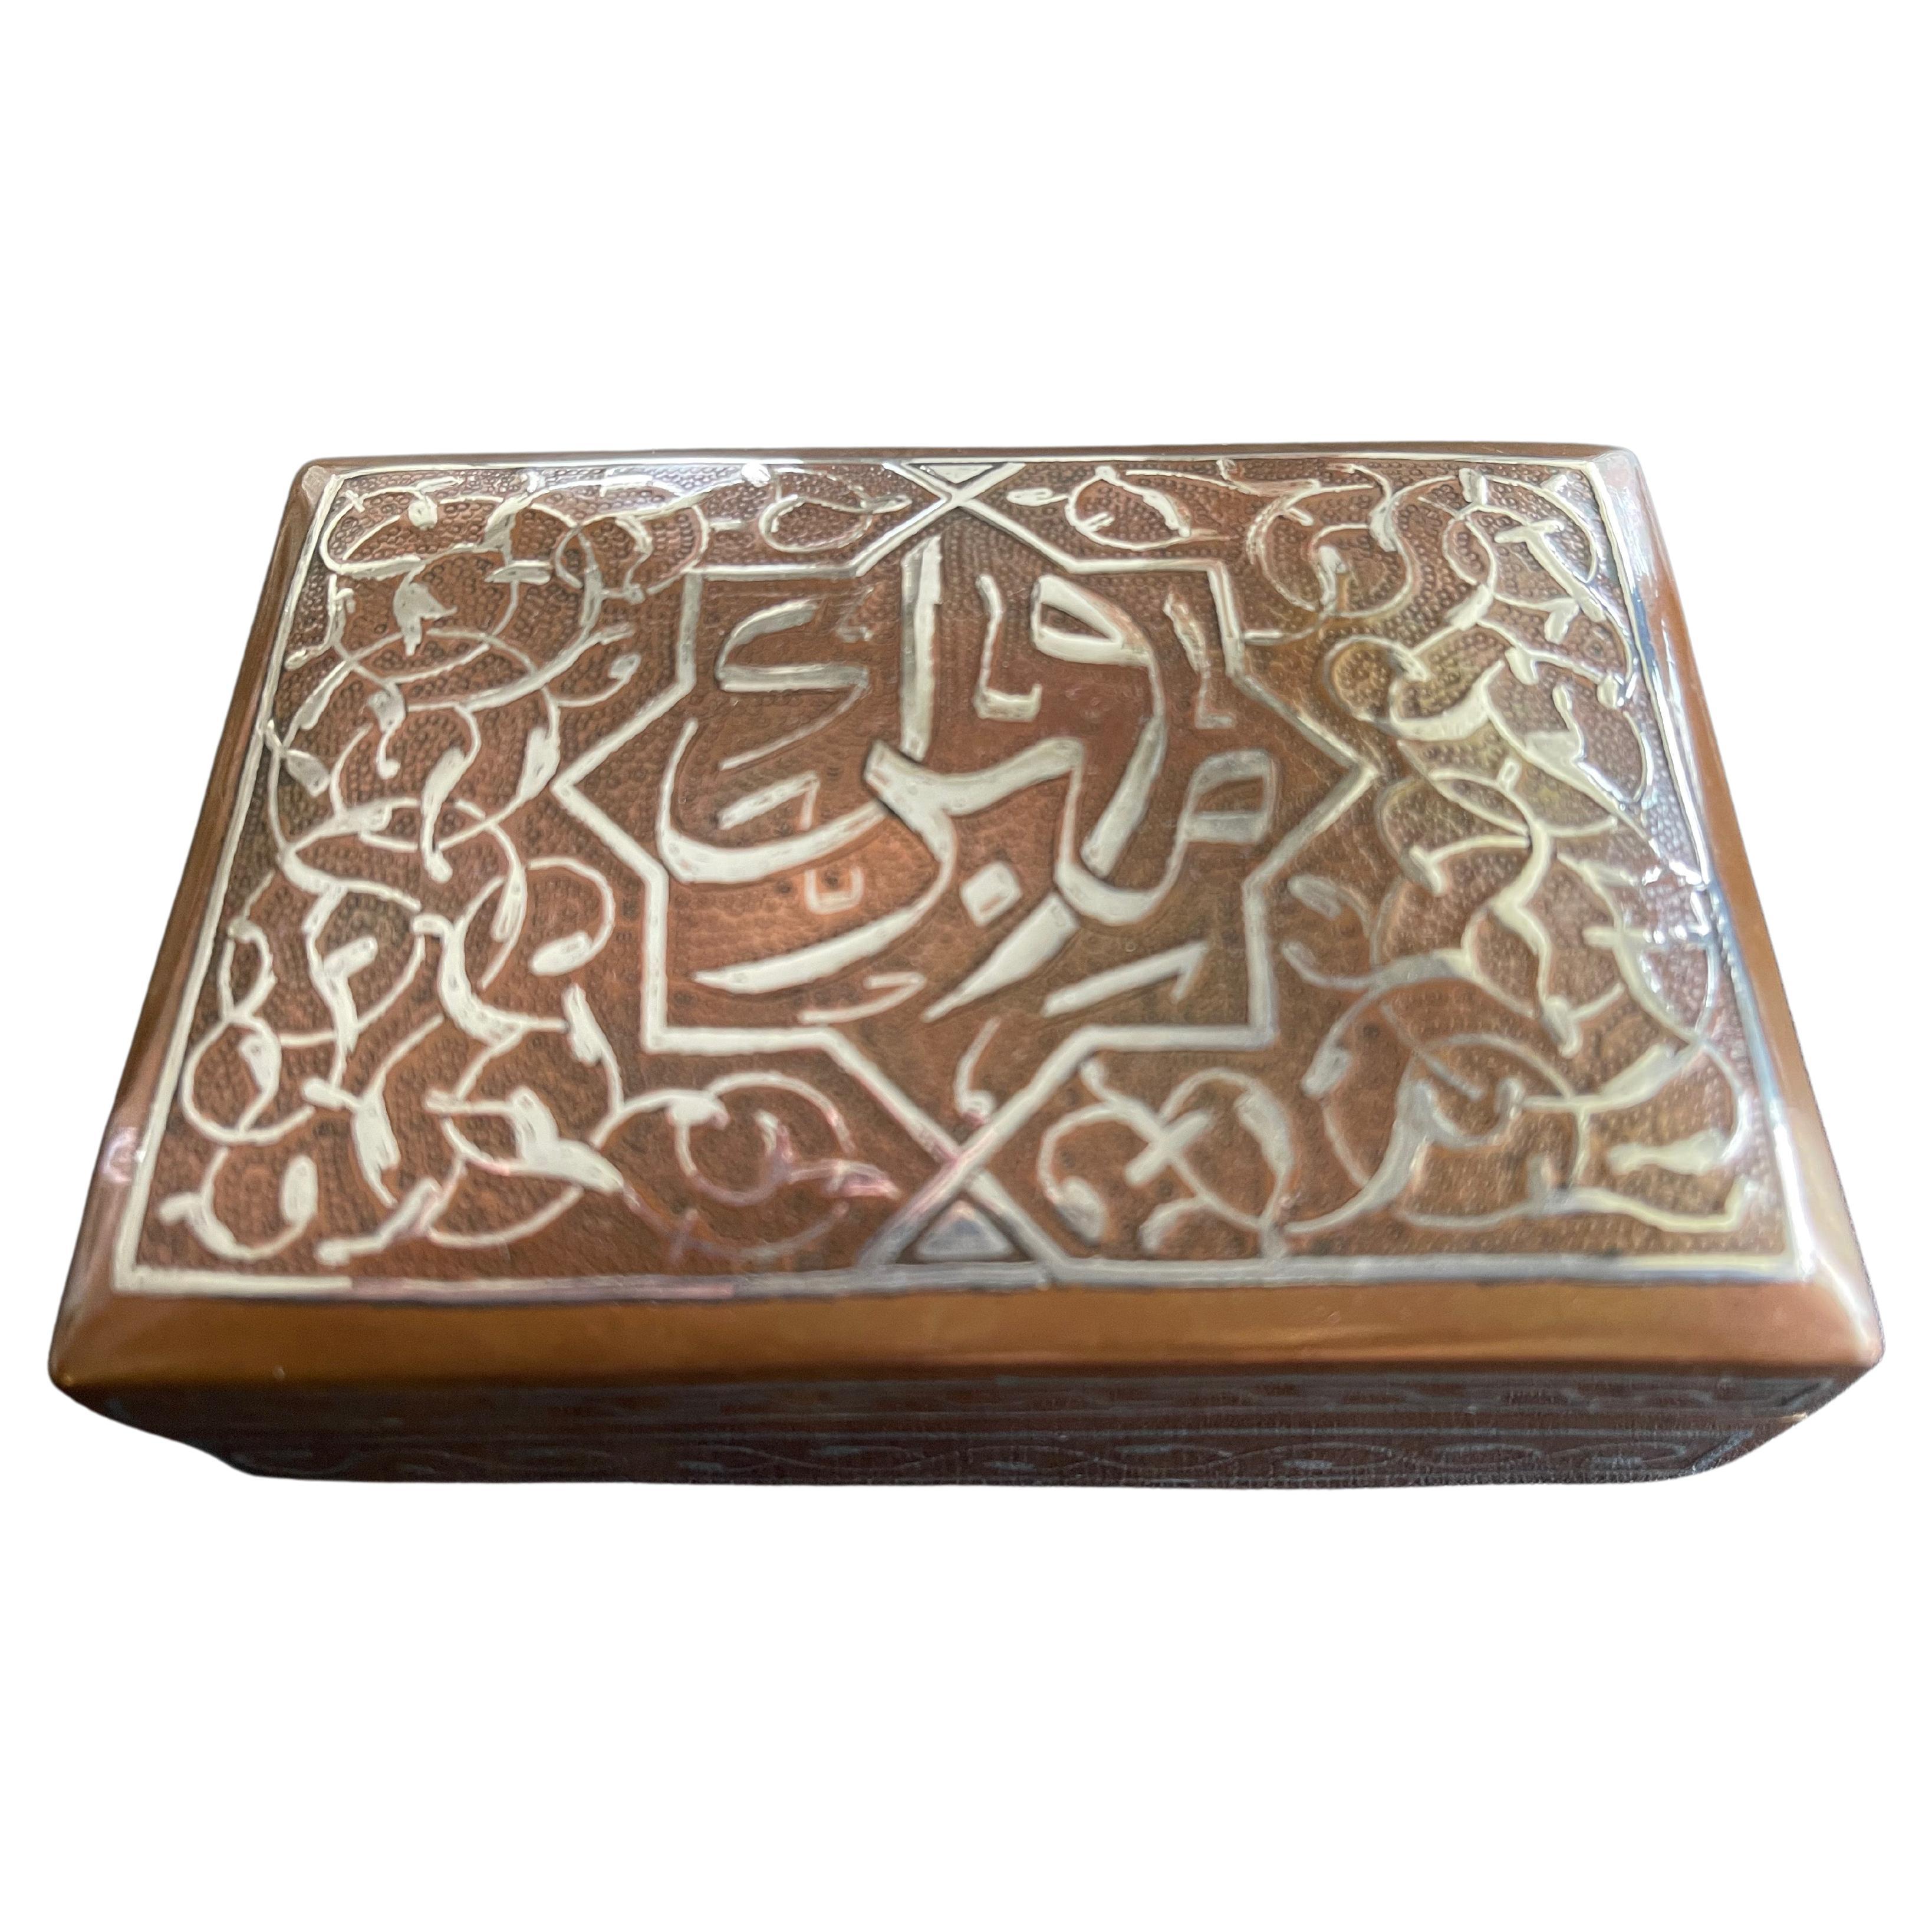 Antike islamische Silber Kalligraphie damaszierten Kupfer-Schmuck-Box mit Scharnierdeckel. Das Kupfer ist fein von Hand gehämmert und hat eine wunderbare Textur. Innen vollständig mit Zedernholz ausgekleidet. Ägypten, ca. 1920er Jahre.

 